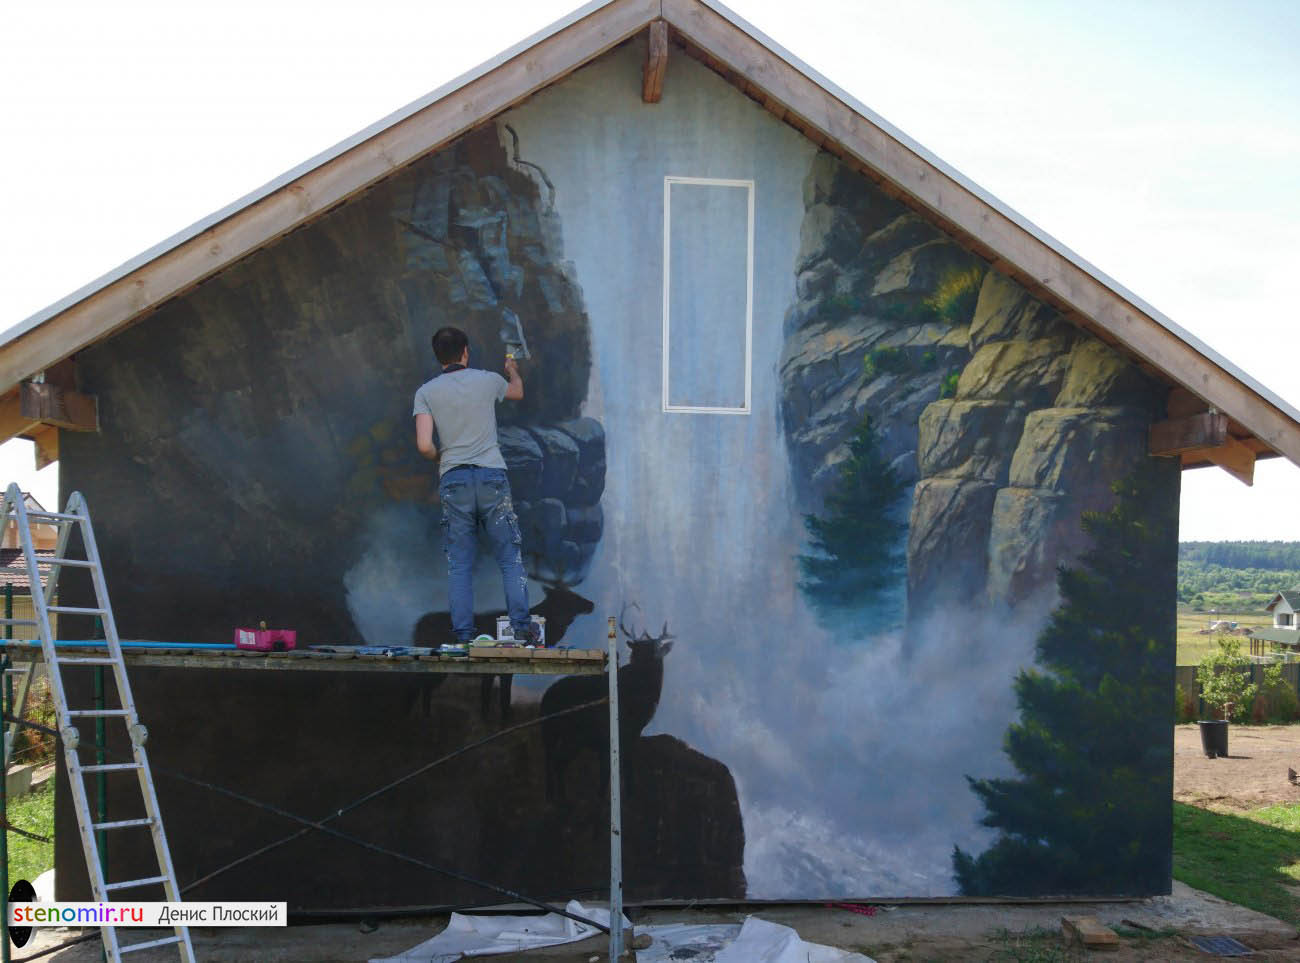 Как разрисовать фасад дома своими руками краской